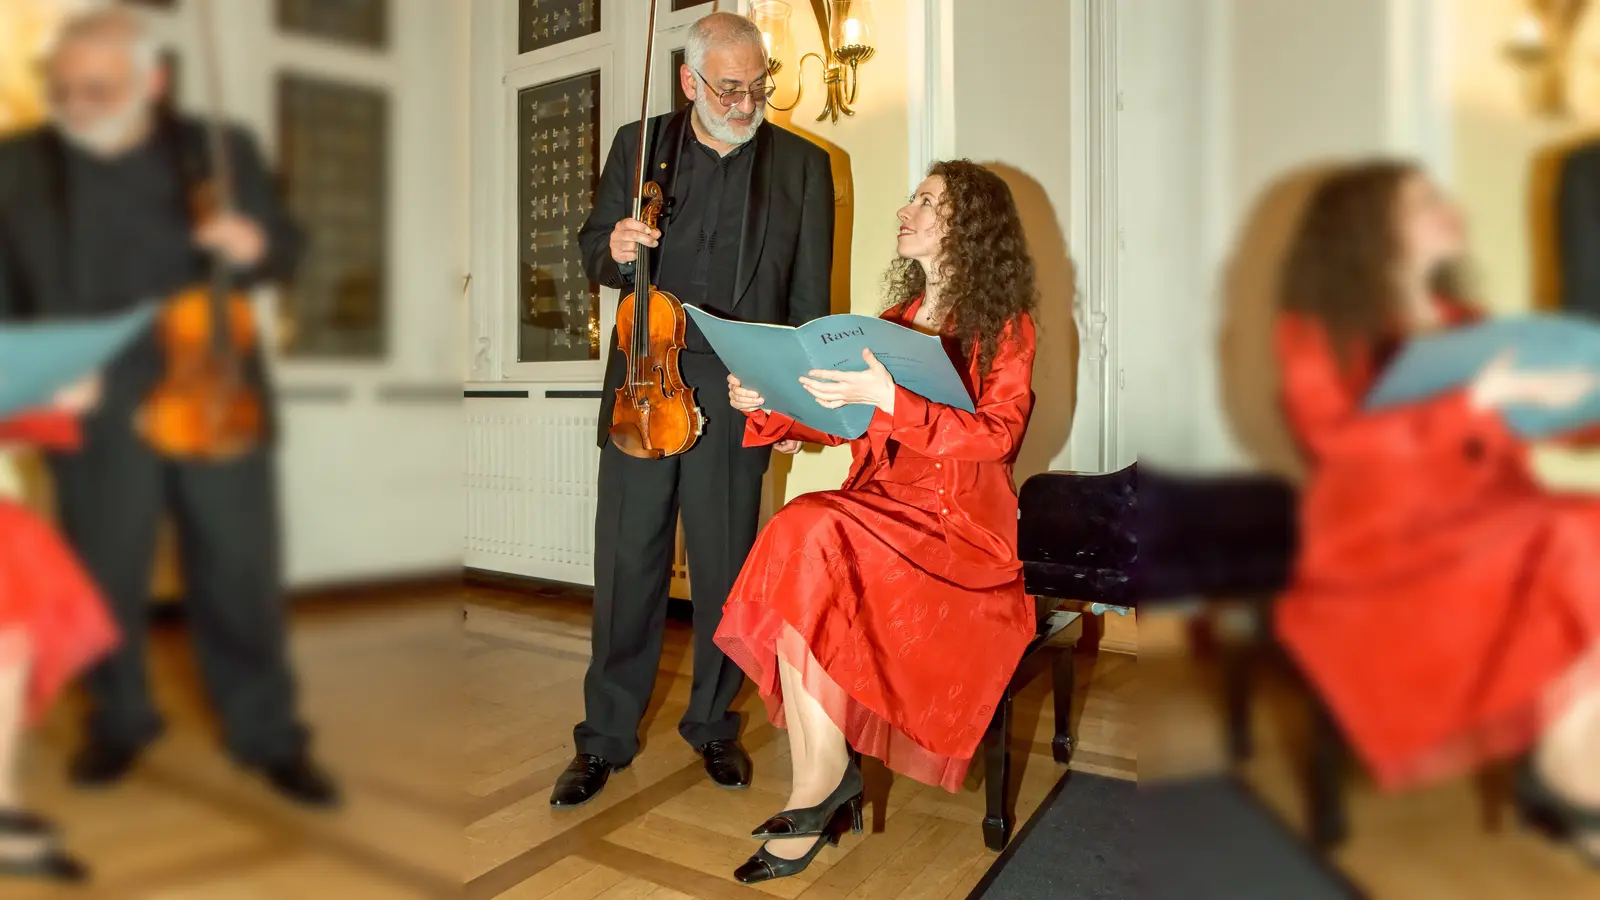 Romantische Klänge mit Violine und Klavier. (Foto: Igor Eisenschtat)